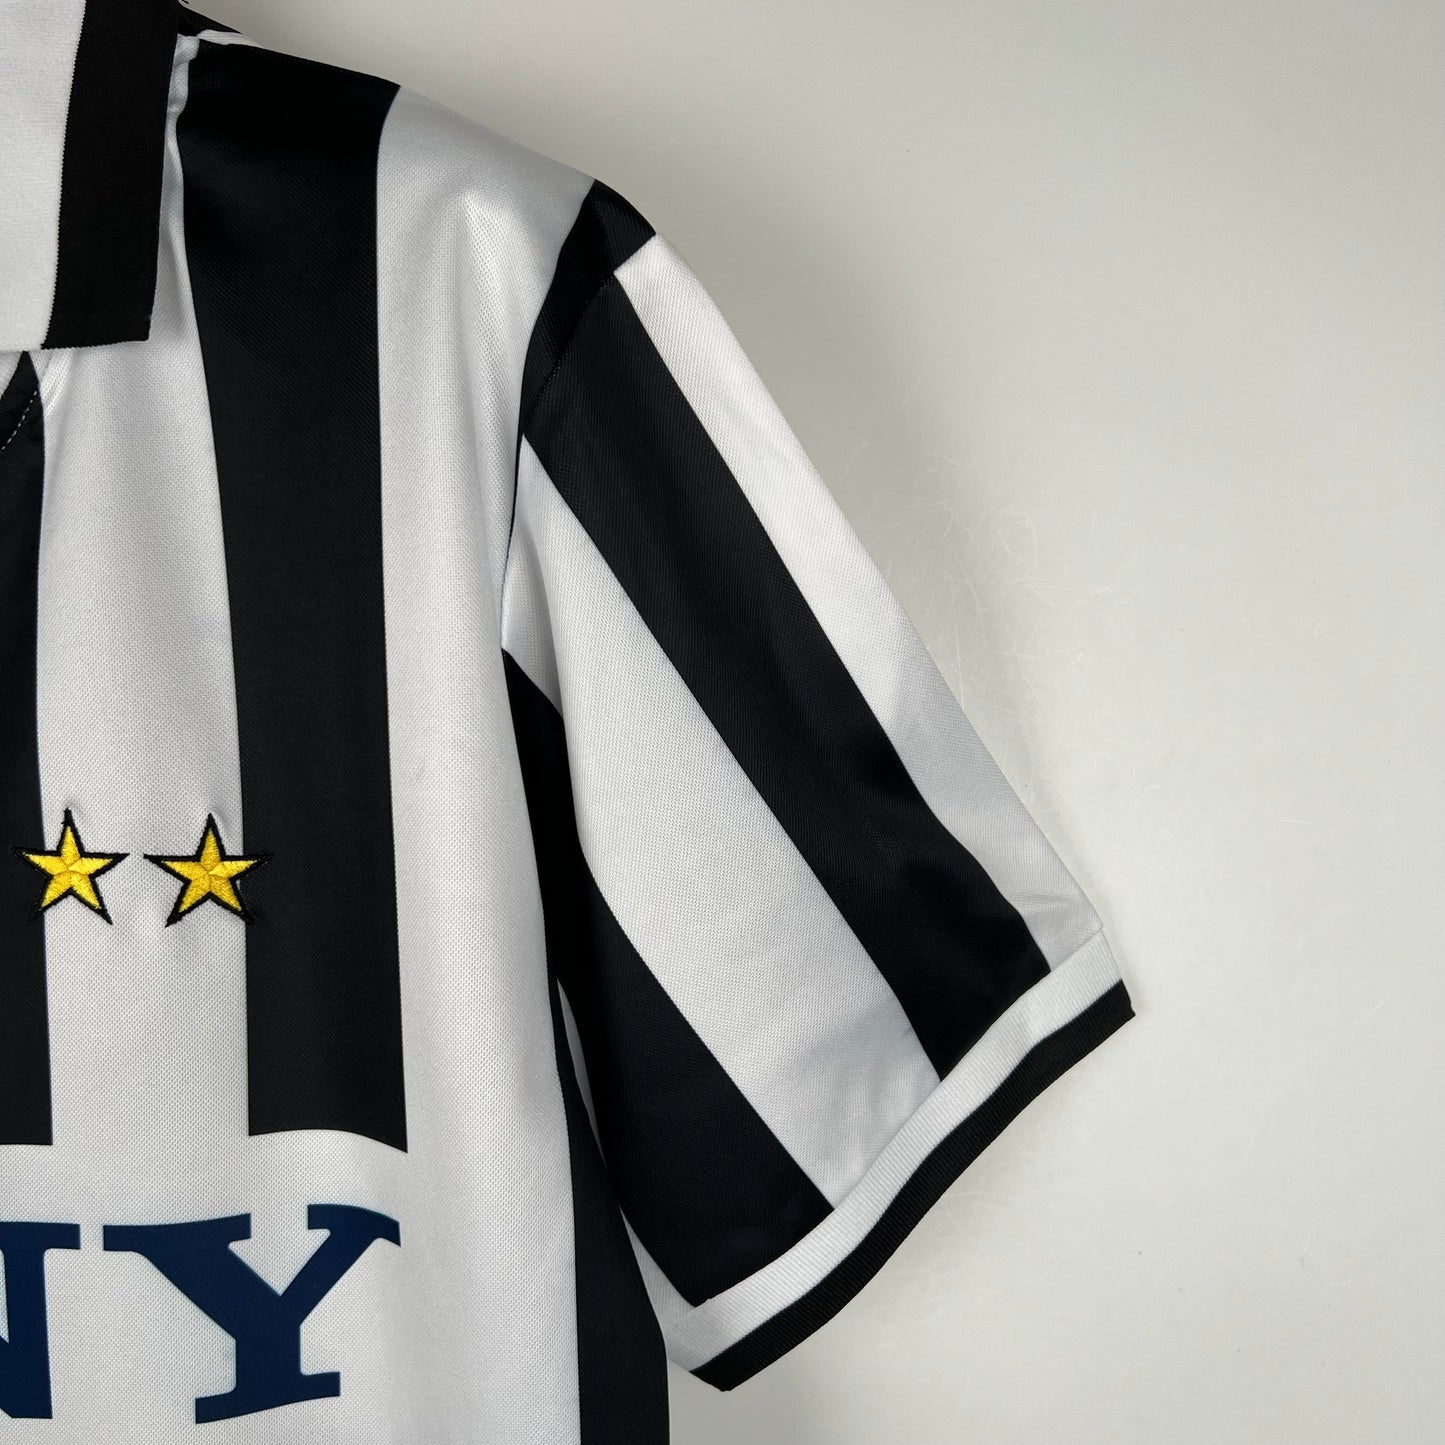 Retro Juventus 96/97 Home Kit